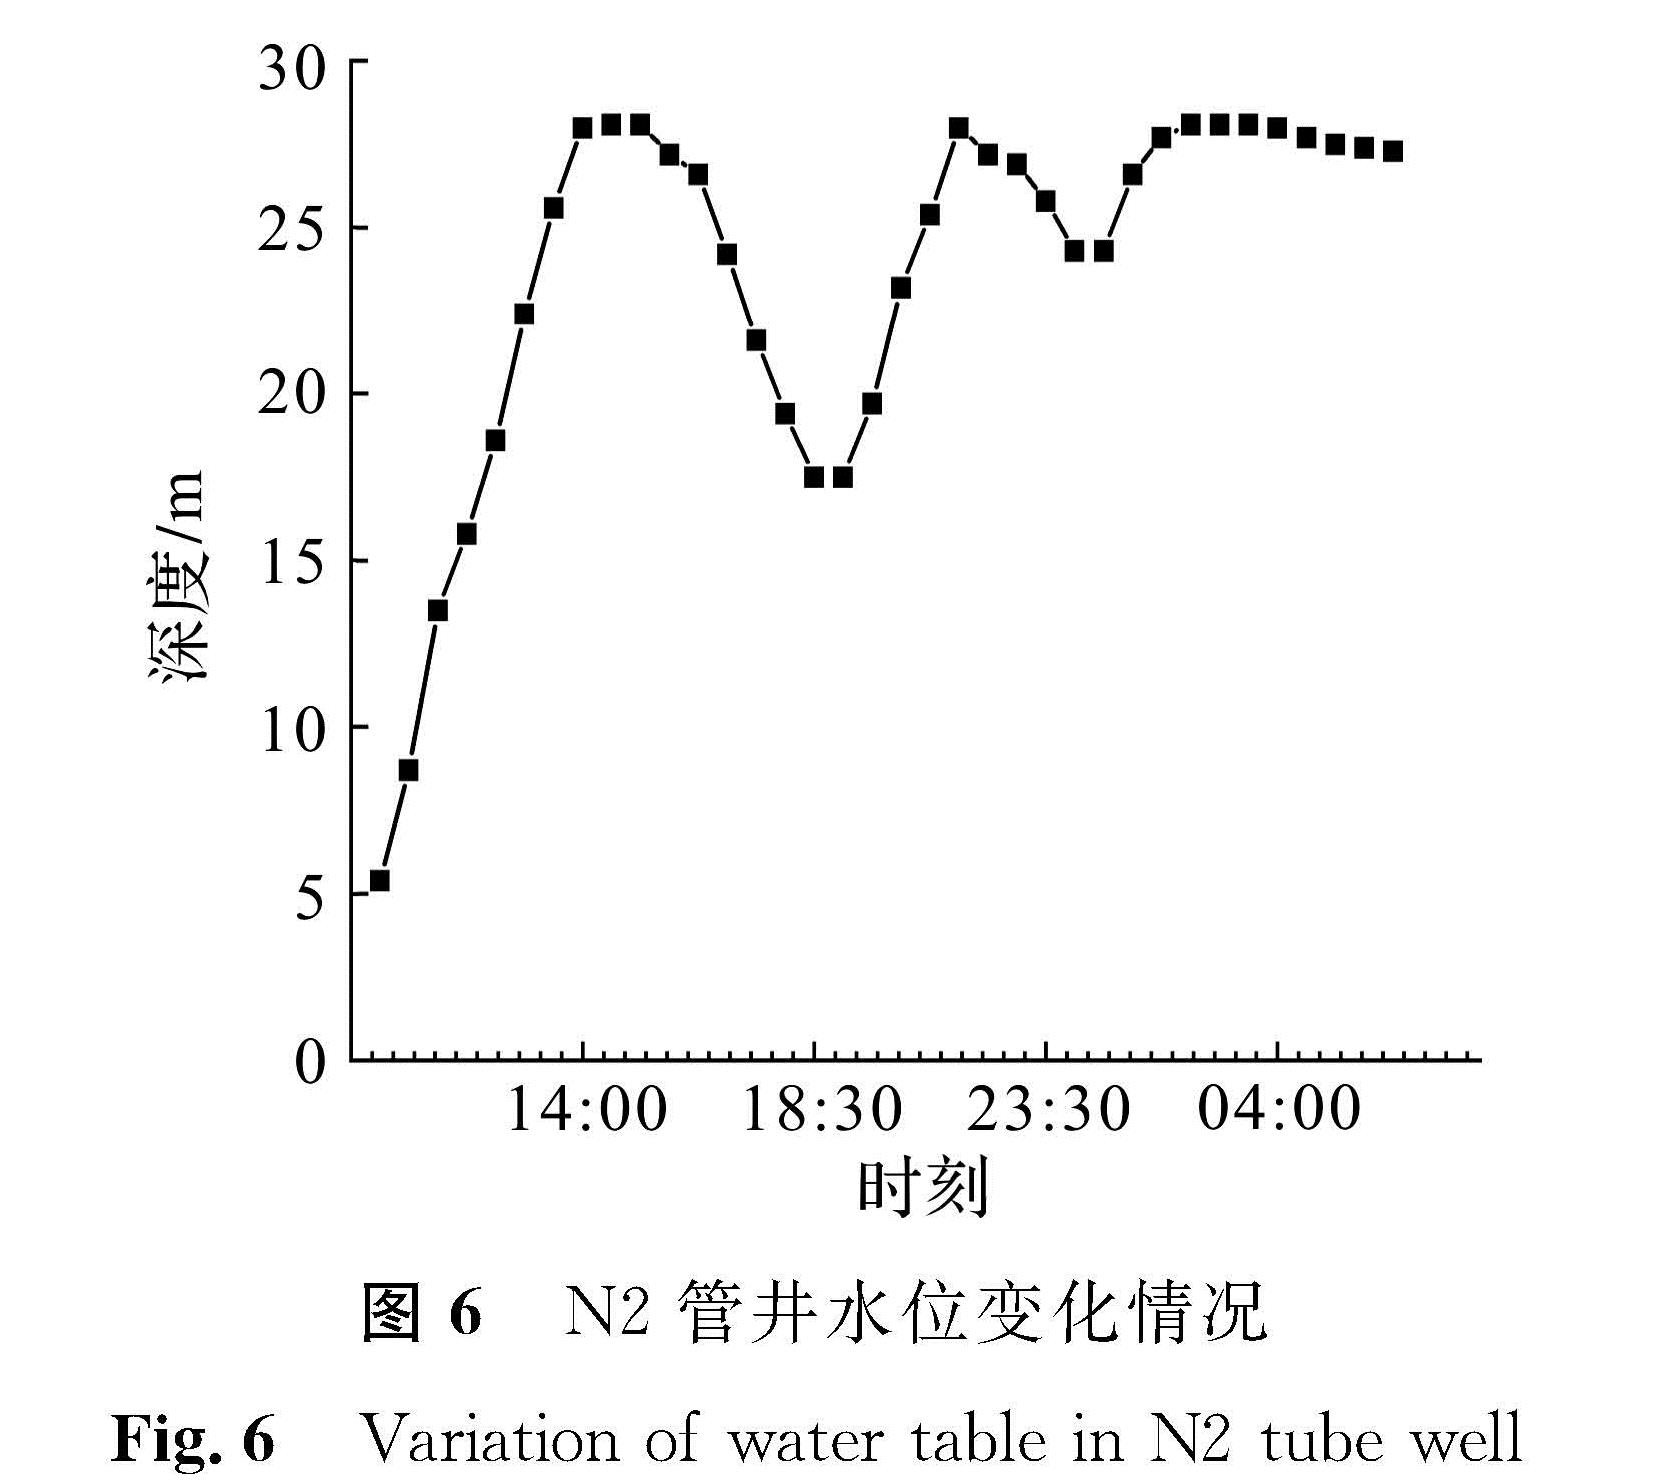 图6 N2管井水位变化情况<br/>Fig.6 Variation of water table in N2 tube well